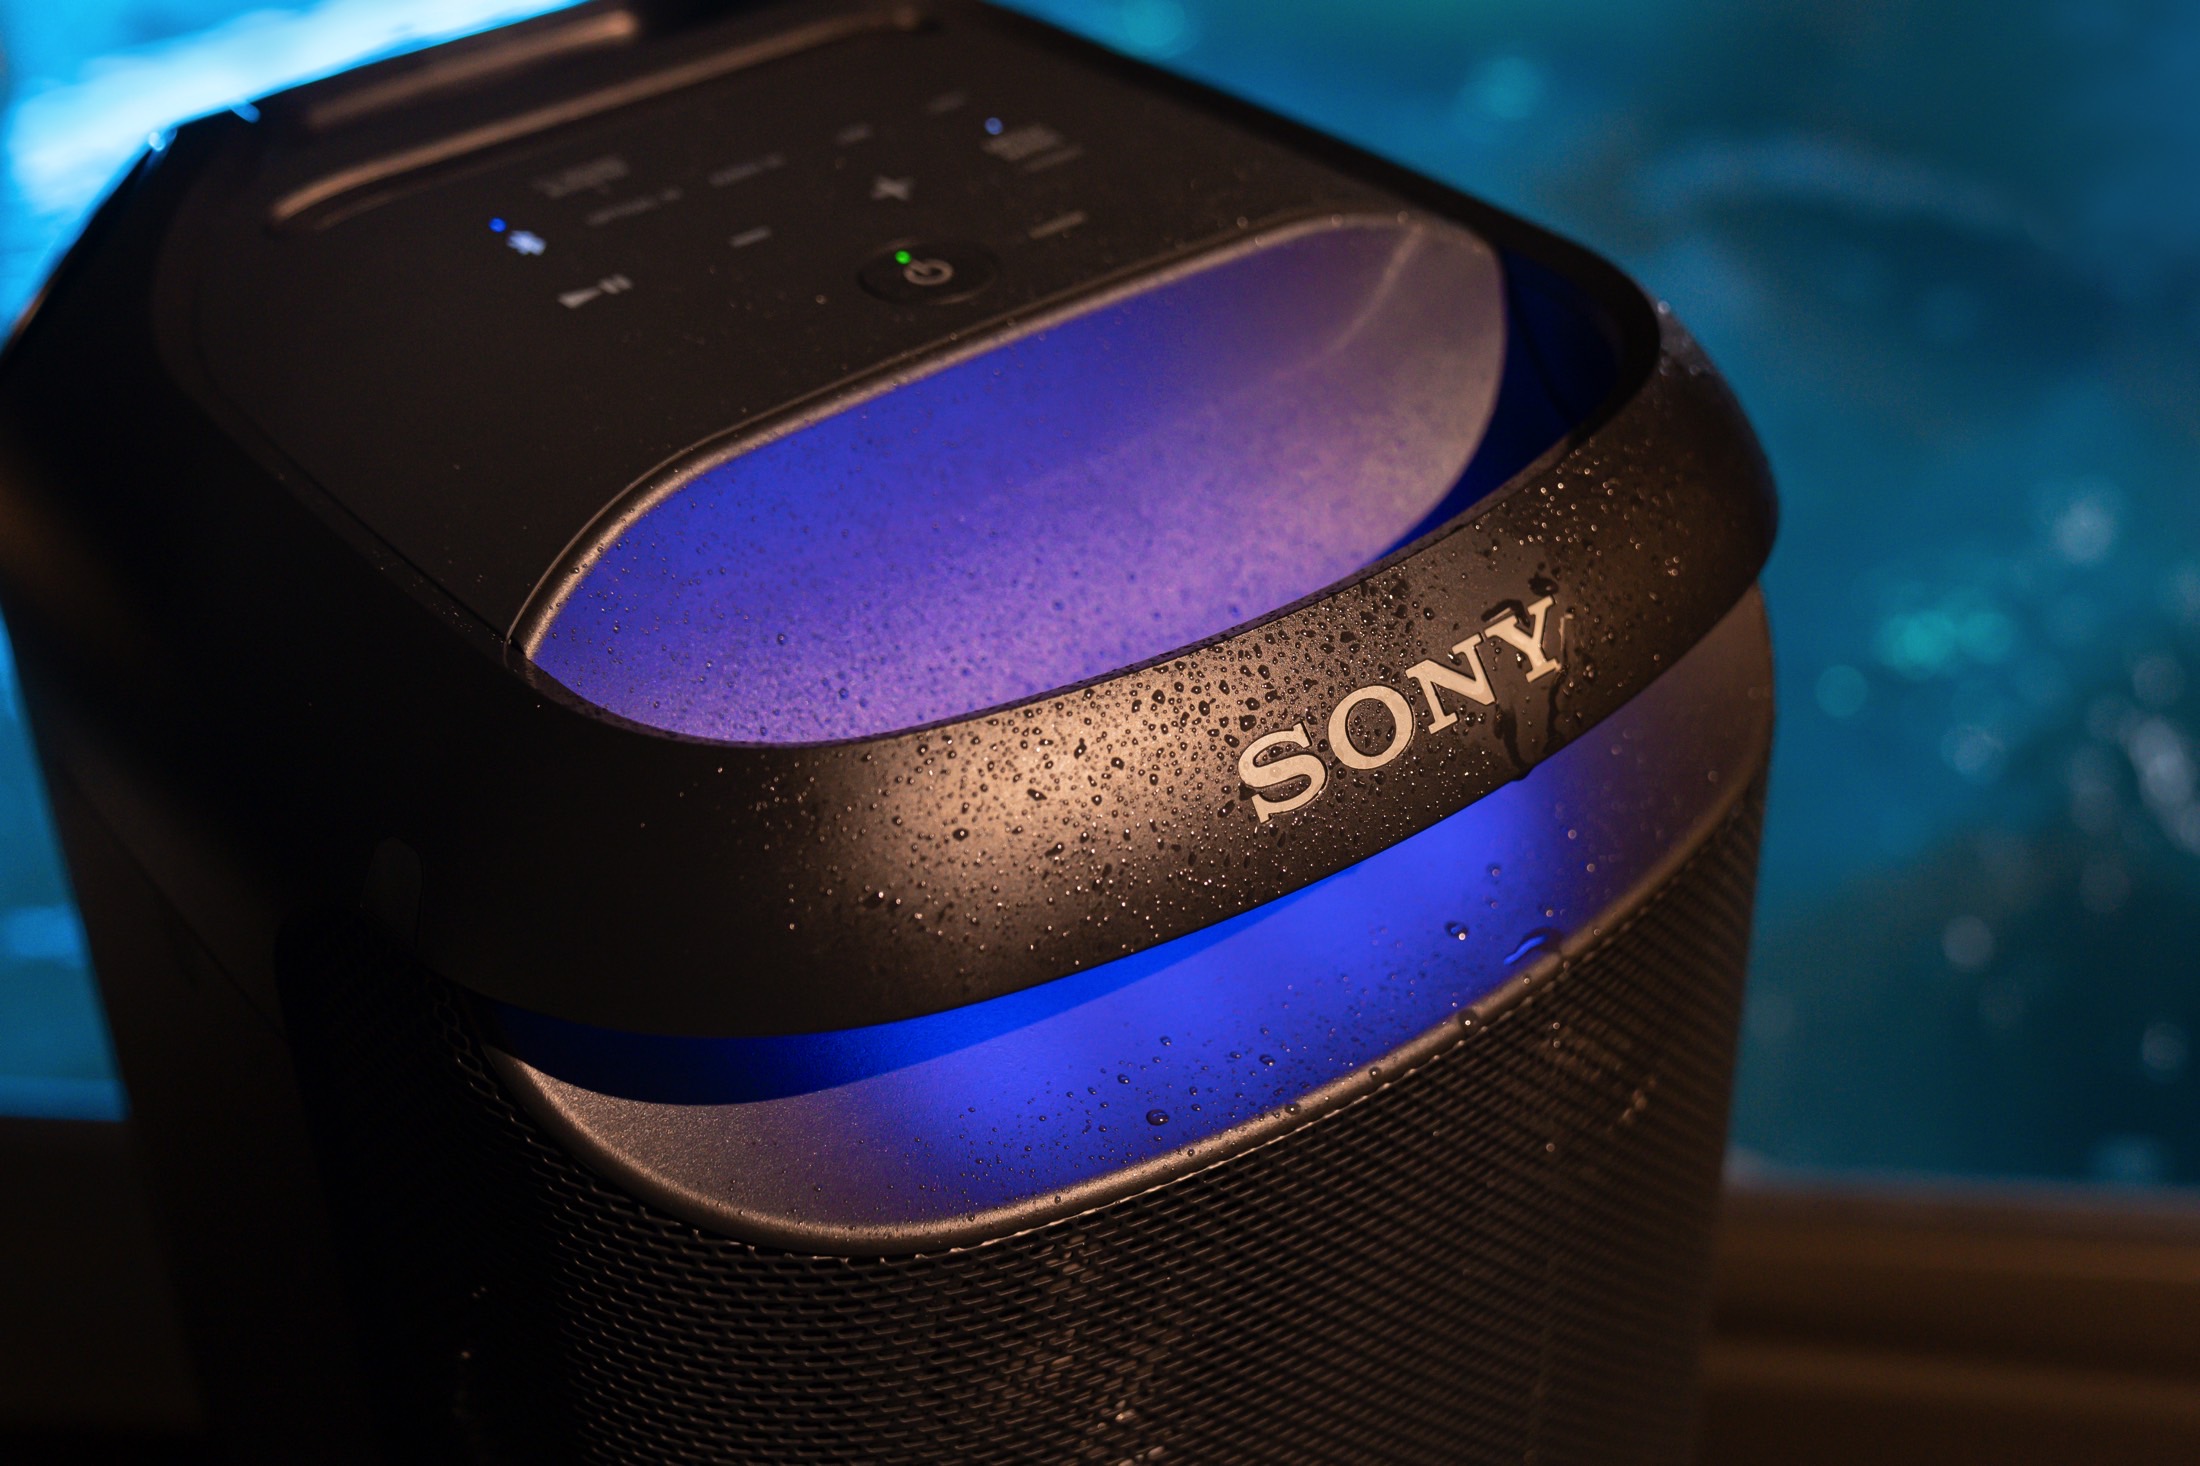 Parte superior da Sony SRS-XV800 com gotas de água e luzes acesas.